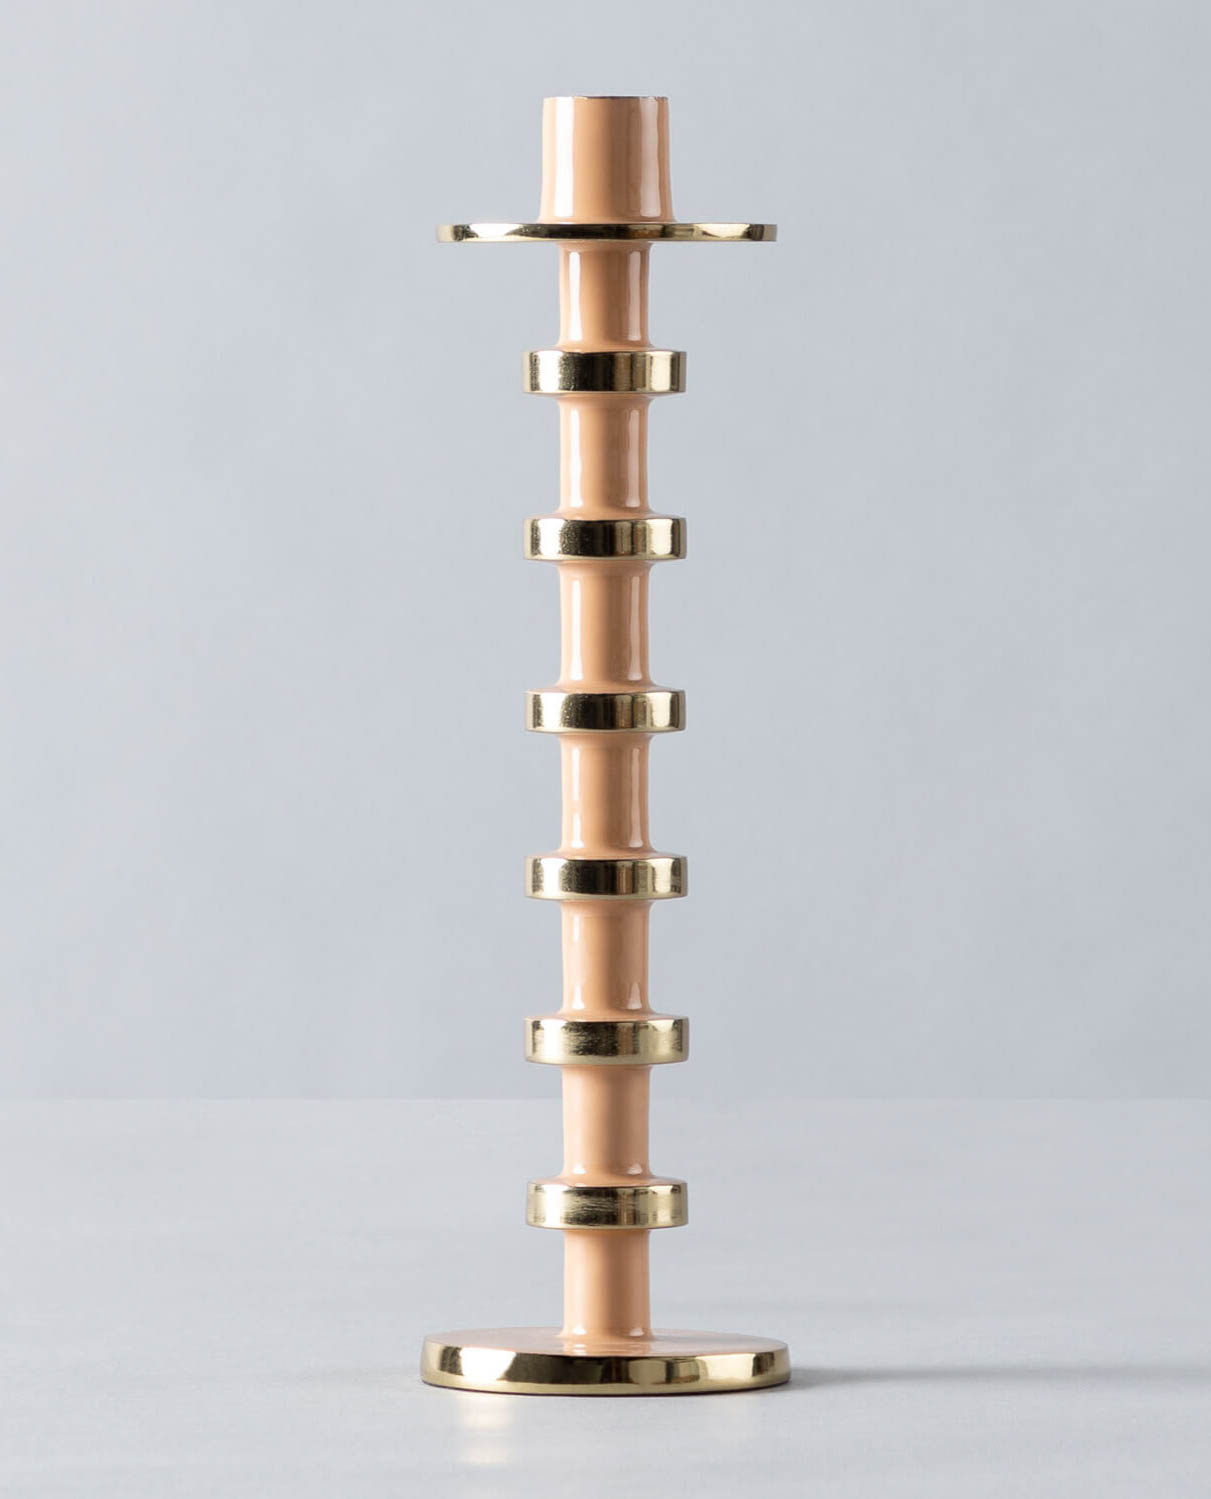 Candelabro de Aluminio (31,5 cm) Meiga, immagine della galleria 1